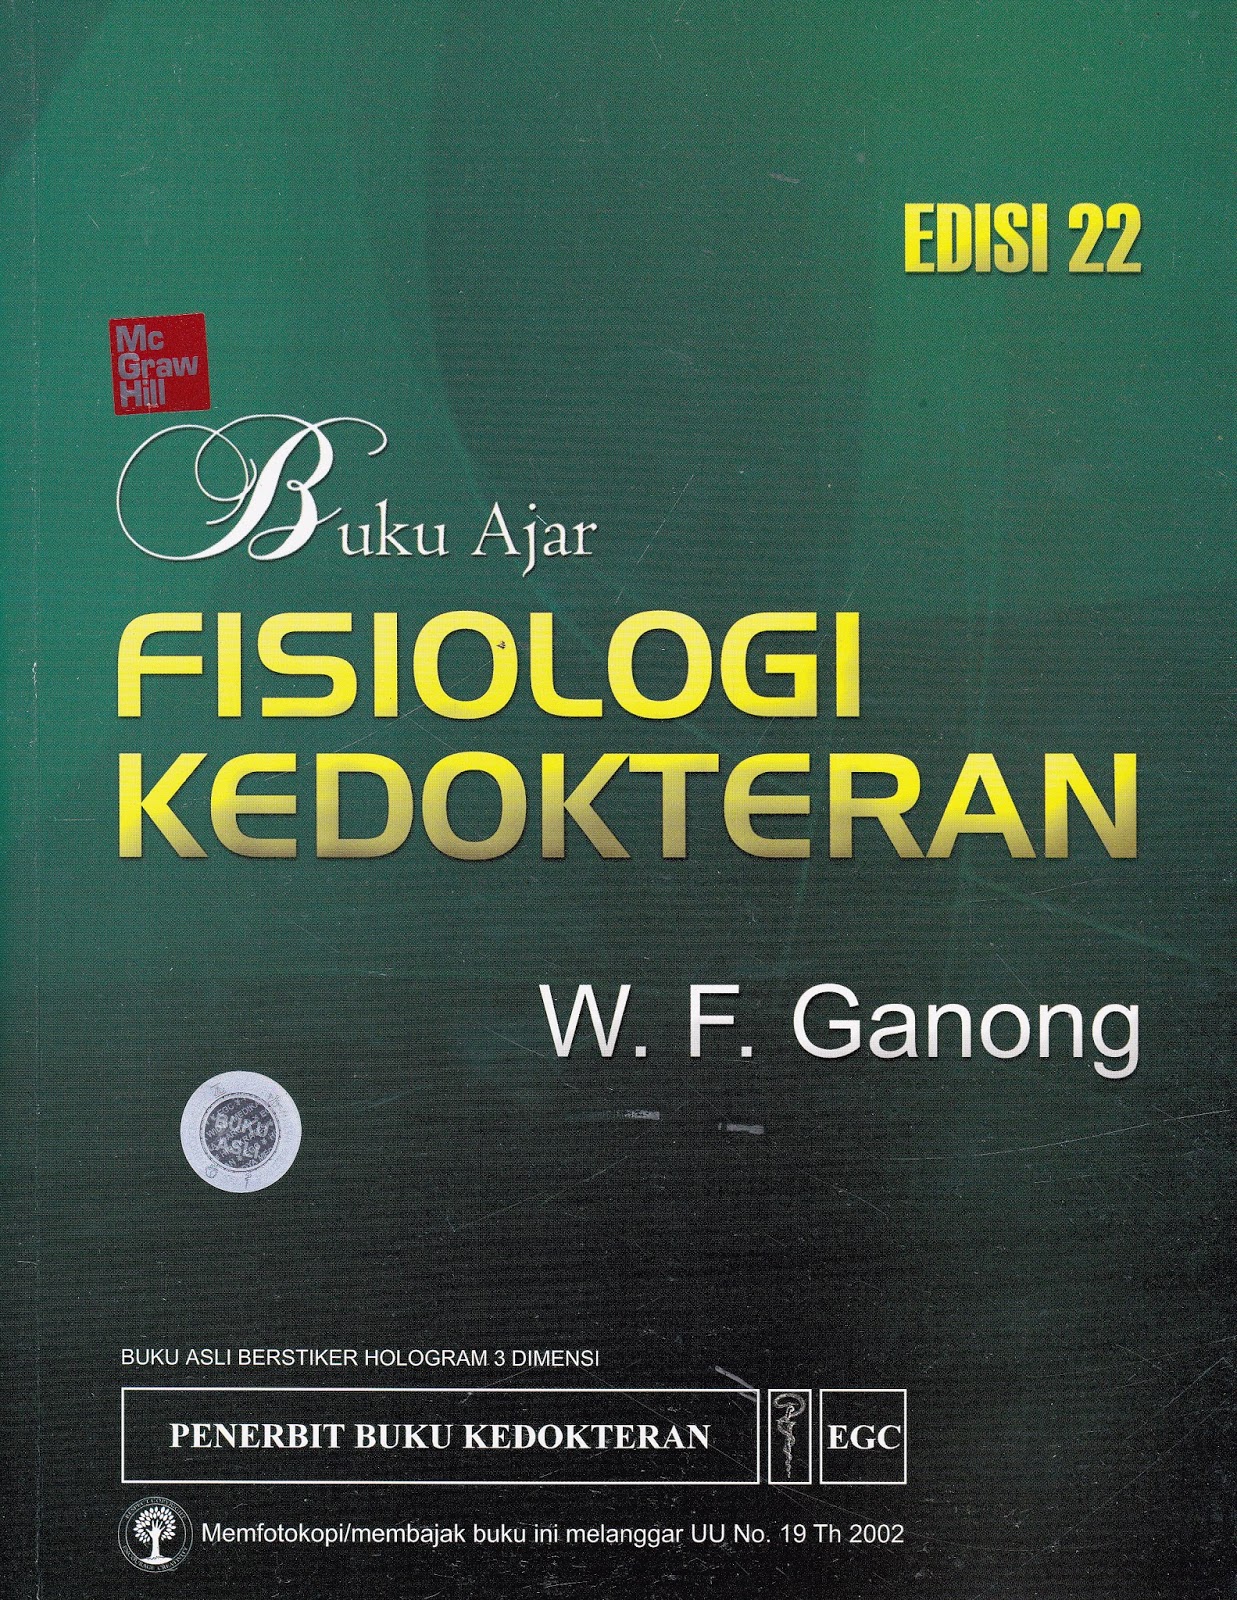 Buku Ajar Fisiologi Kedokteran Ganong Pdf Download